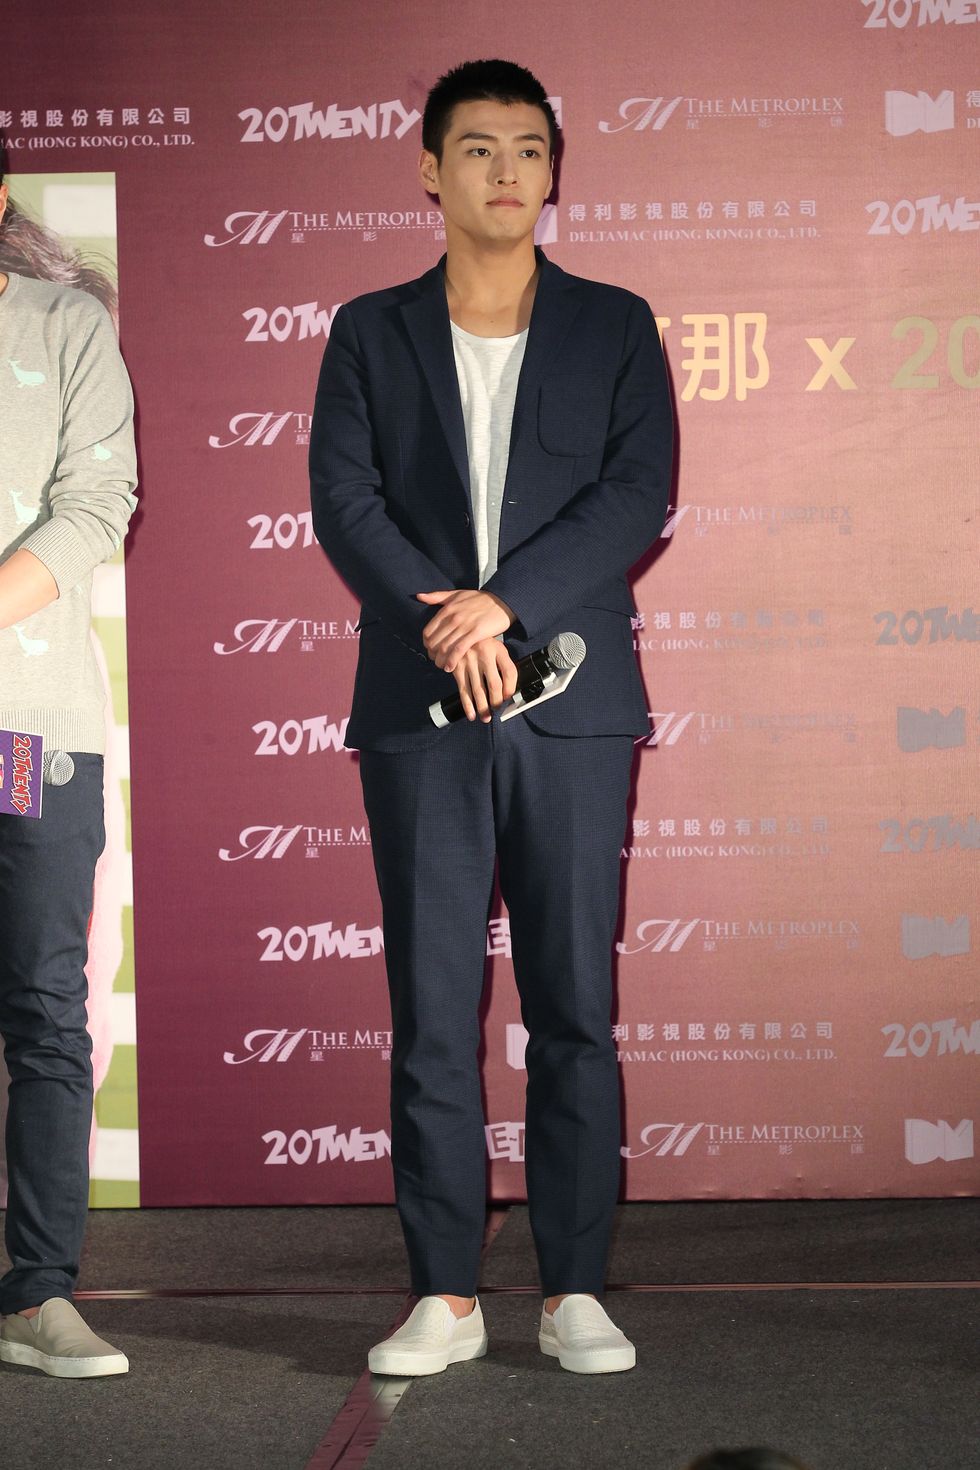 hongkong, china   june 06 china mainland outha neul kang promotes his new movie 20 twenty on 6th june, 2015 in hongkong, chinaphoto by tpggetty images